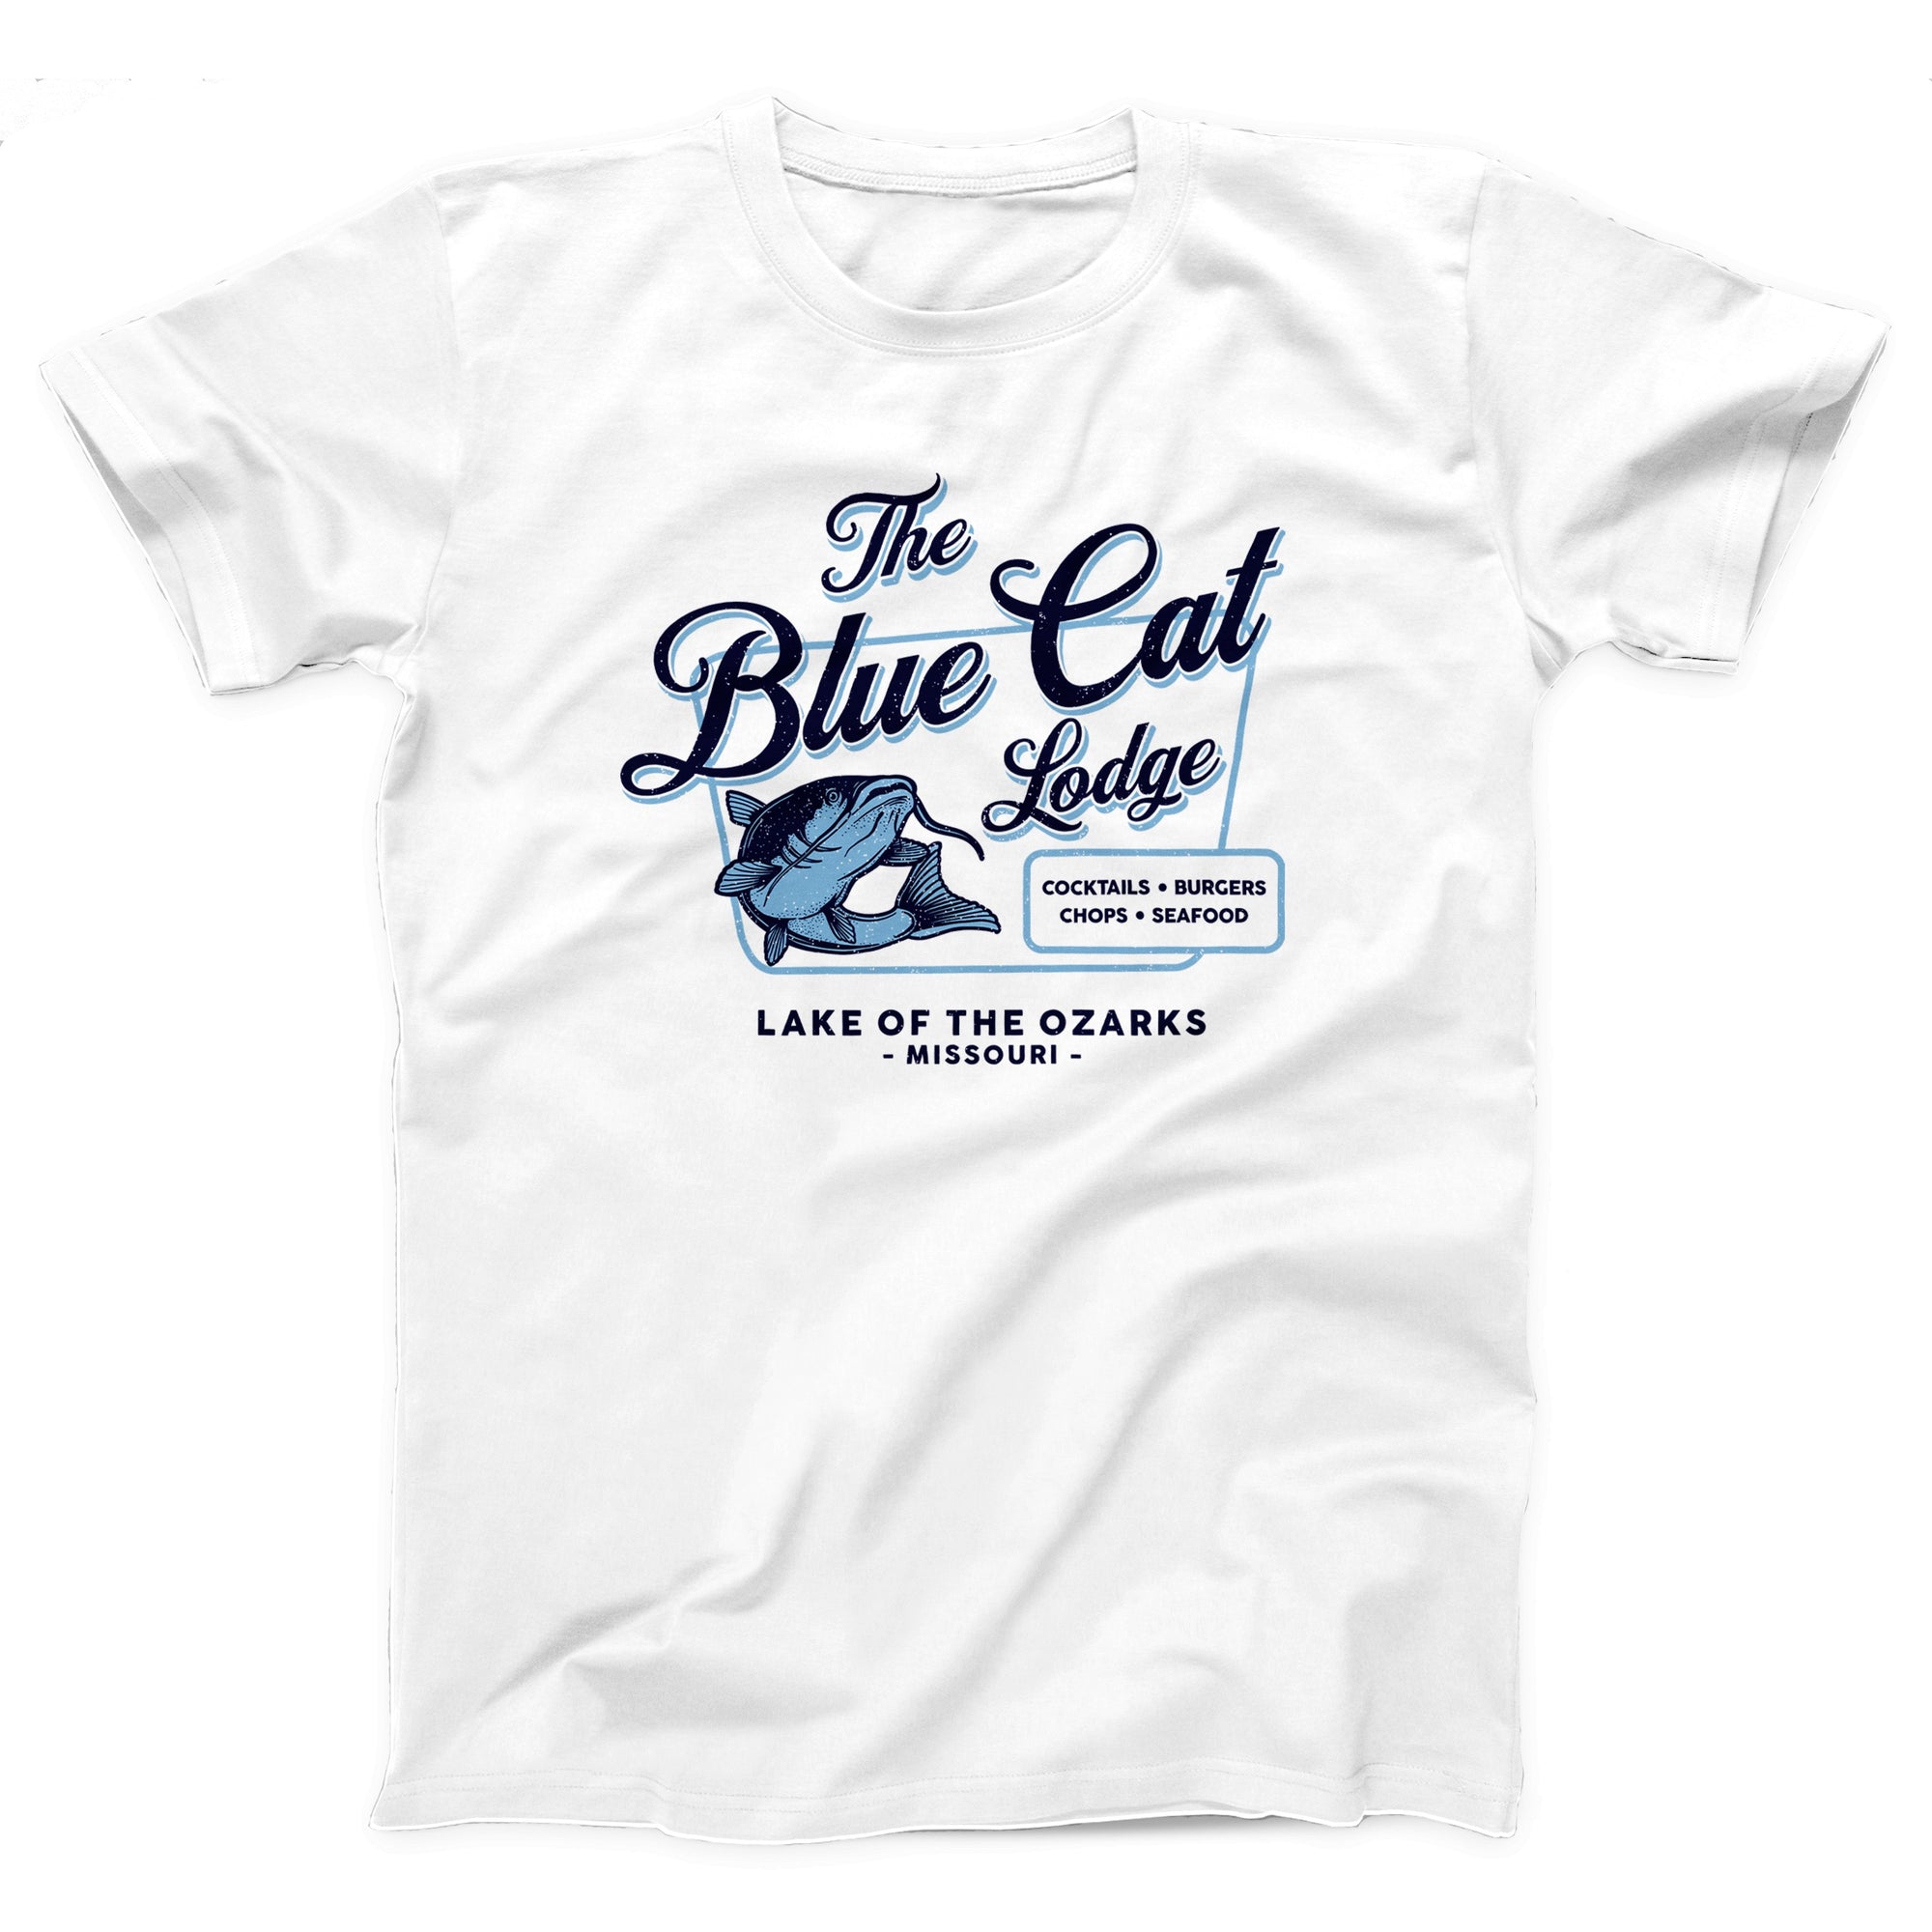 Blue Cat Lodge Adult Unisex T-Shirt